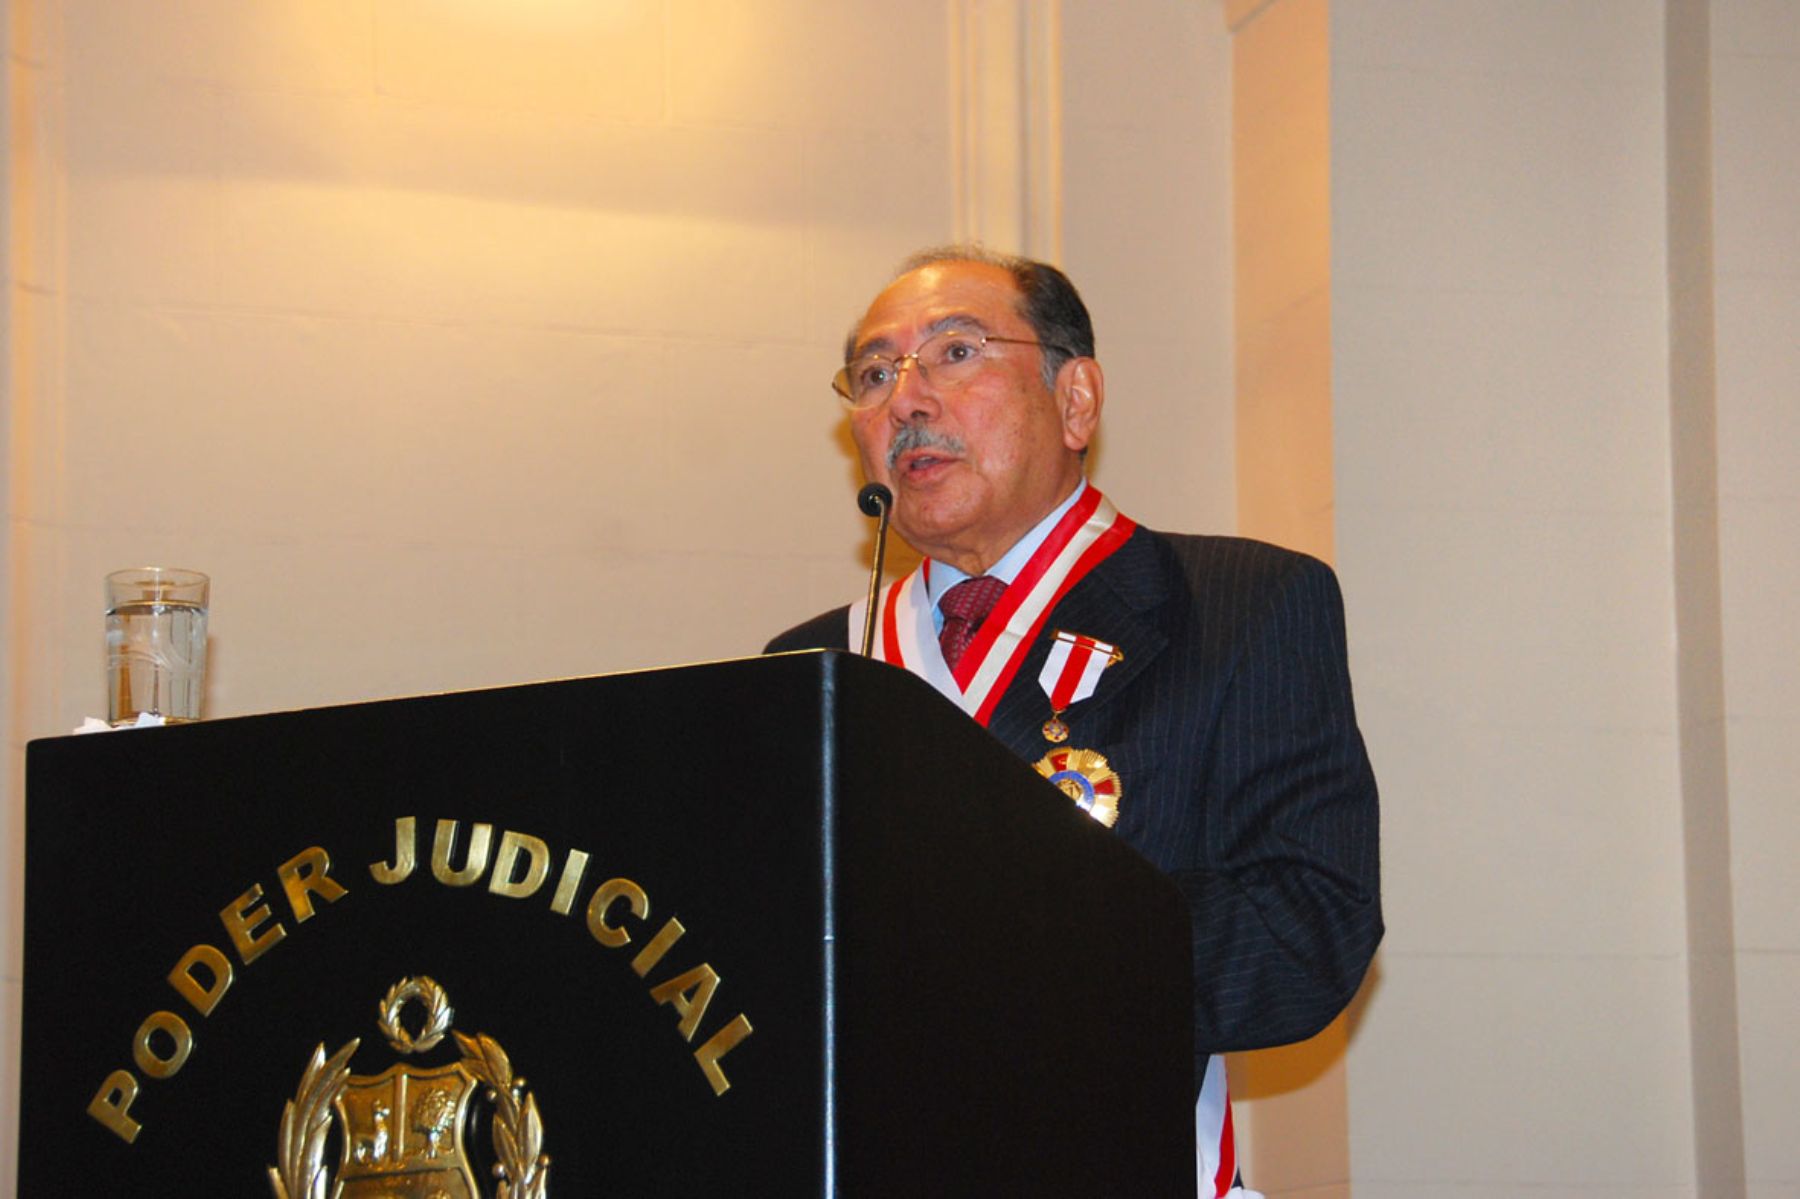 Juez Supremo Manuel Sánchez - Palacios Paiva durante discurso tras ser condecorado por el Poder Judicial. Foto: Poder Judicial.